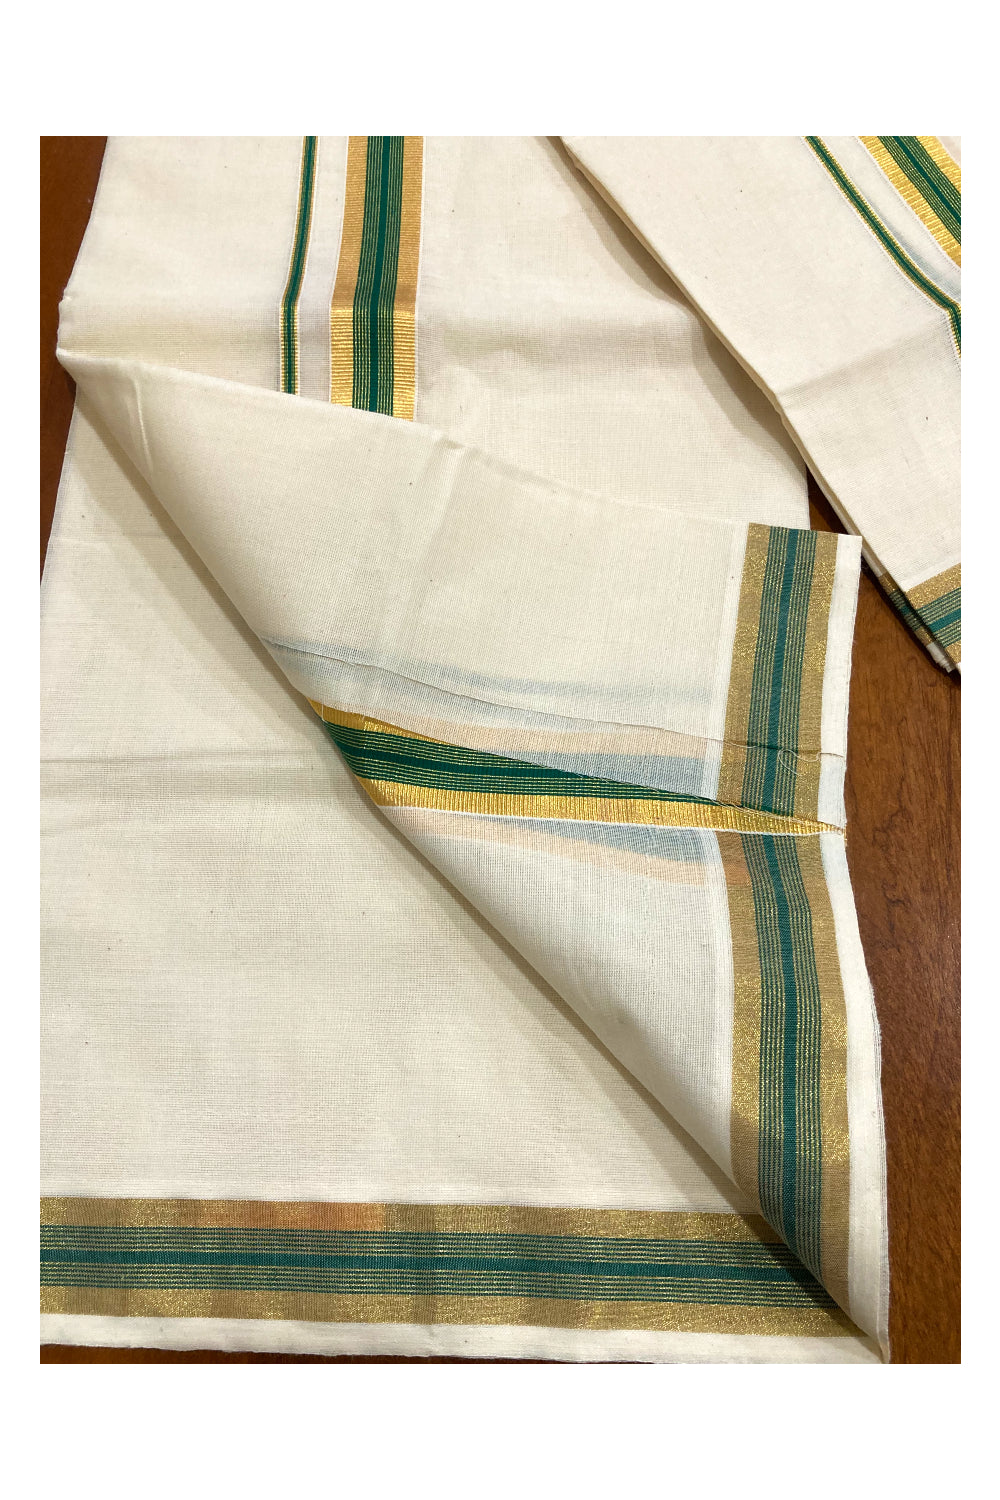 Pure Cotton Kerala Single Set Mundu (Mundum Neriyathum) with Green and 1 inch Kasavu Border 2.80 Mtrs